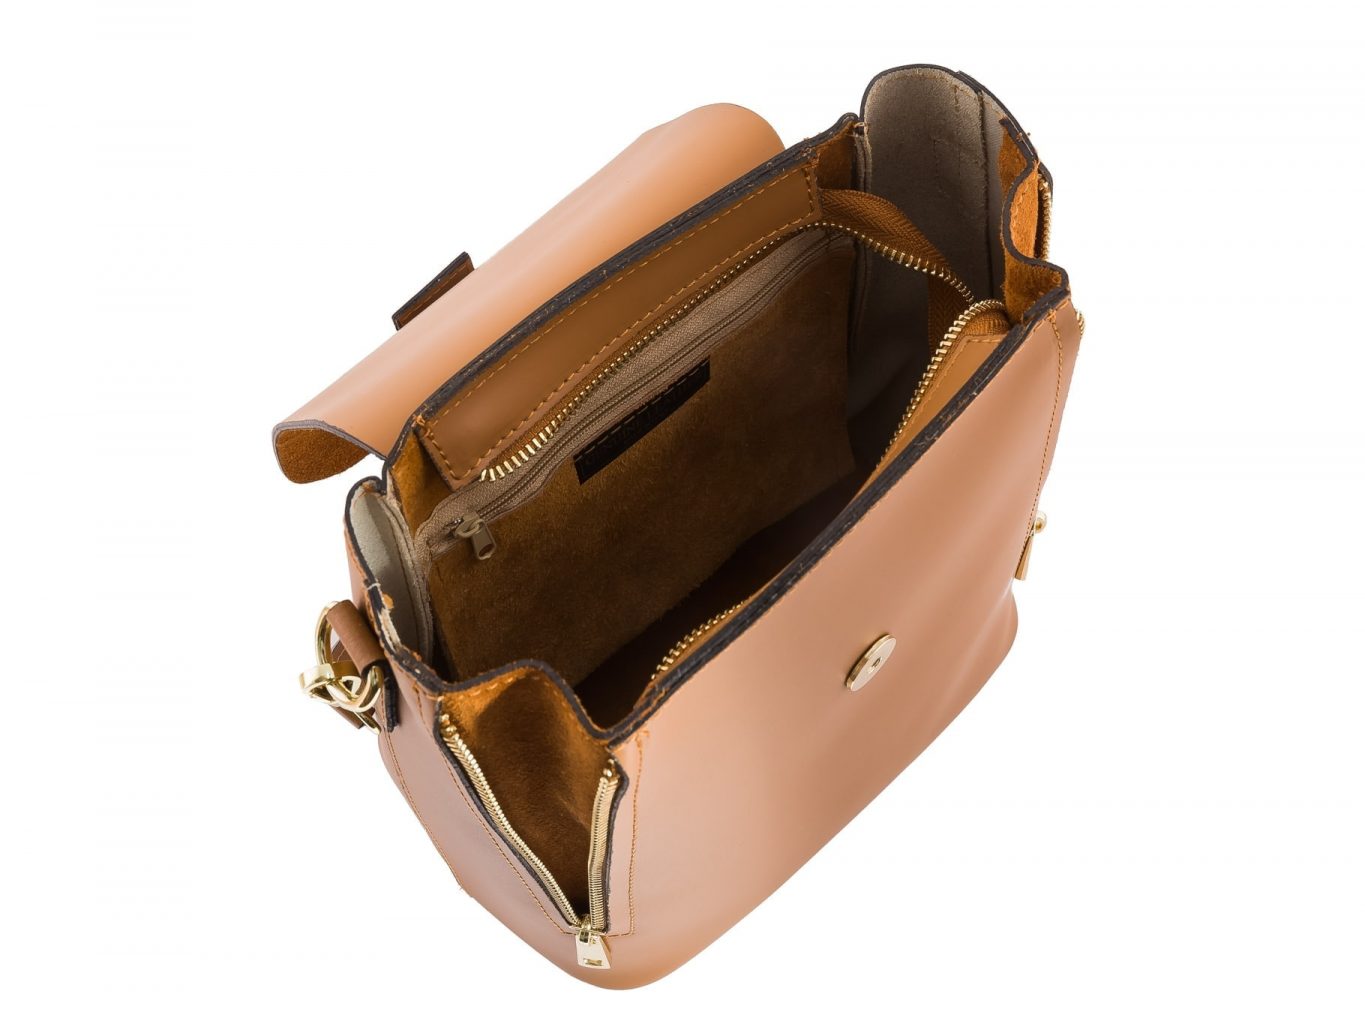 Convertible Backpack Handbag by Elsanna Portea